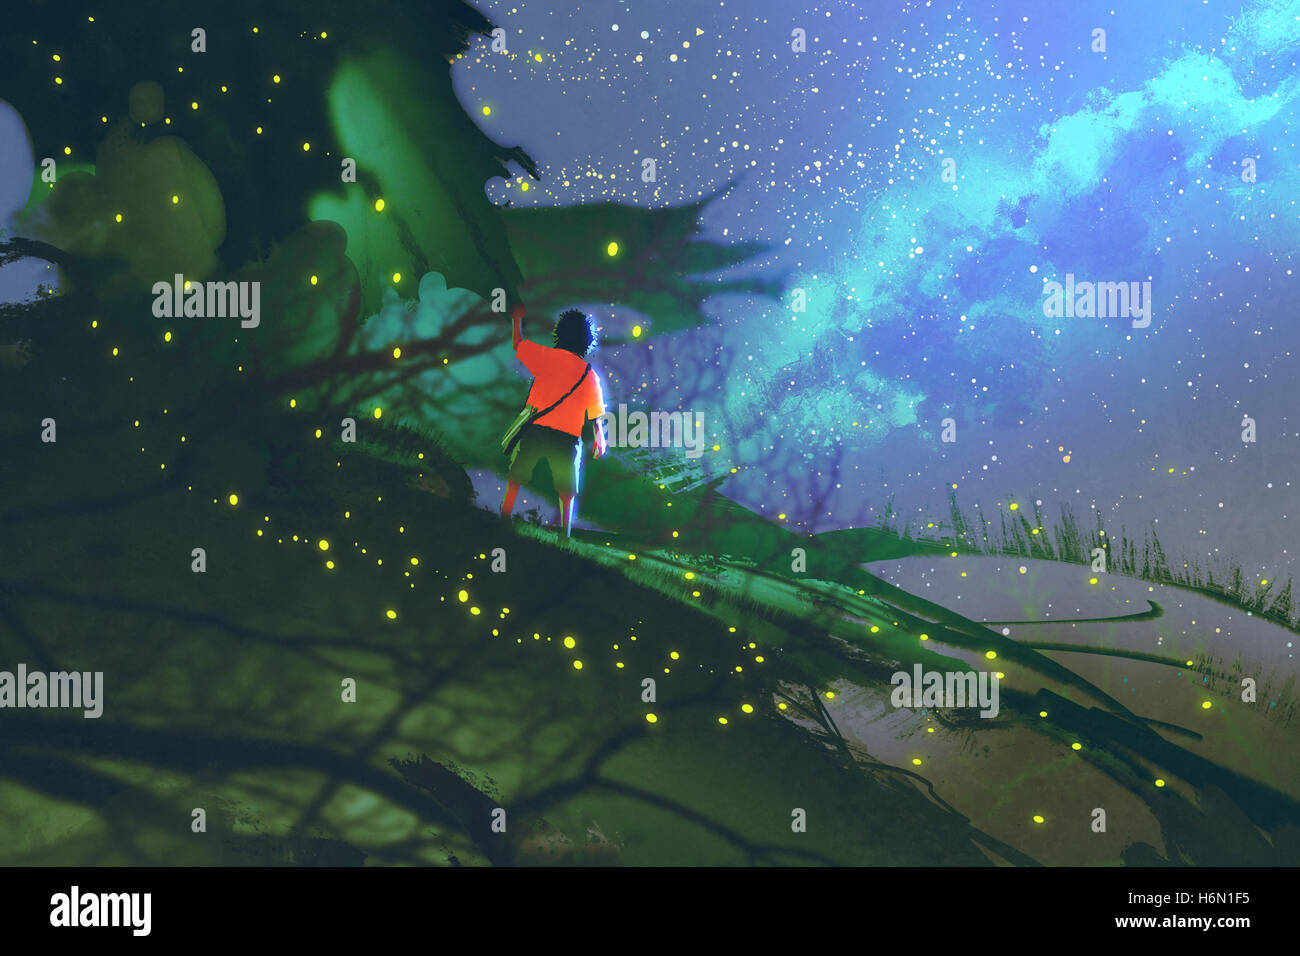 kleiner Junge steht auf riesige Blätter betrachten einen Nachthimmel, Illustration, Malerei Stockfoto